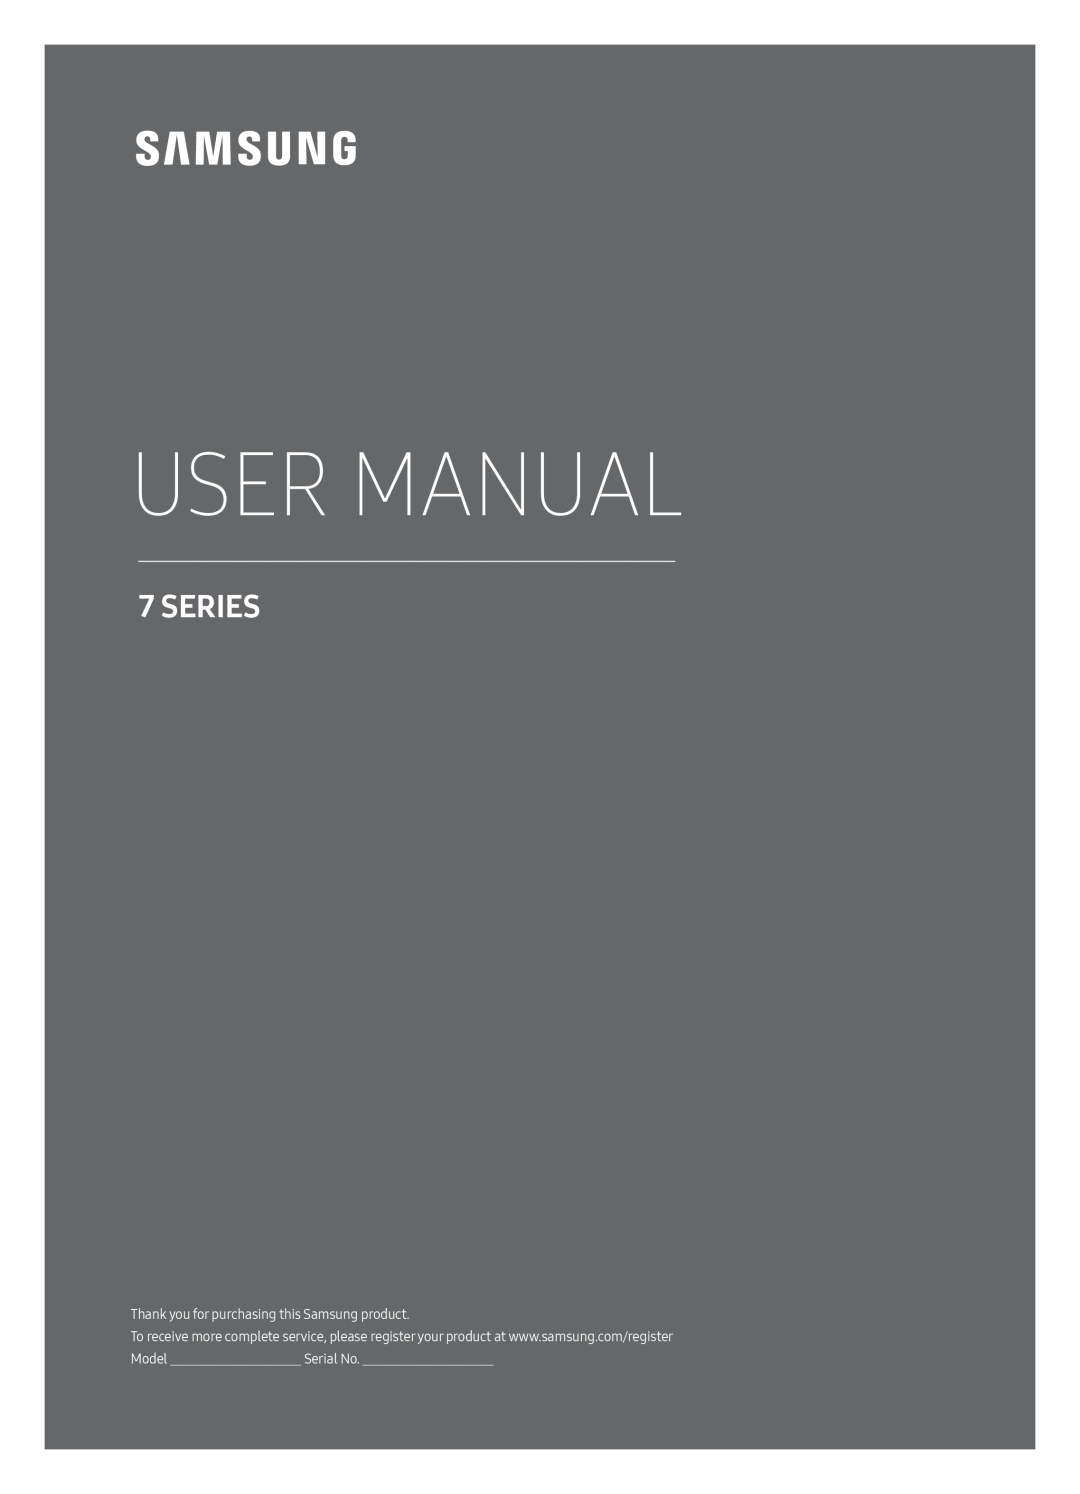 Samsung UE49MU7079TXZG, UE49MU7049TXZG, UE49MU7059TXZG, UE65MU7079TXZG, UE55MU7059TXZG manual User Manual, Series, Serial No 